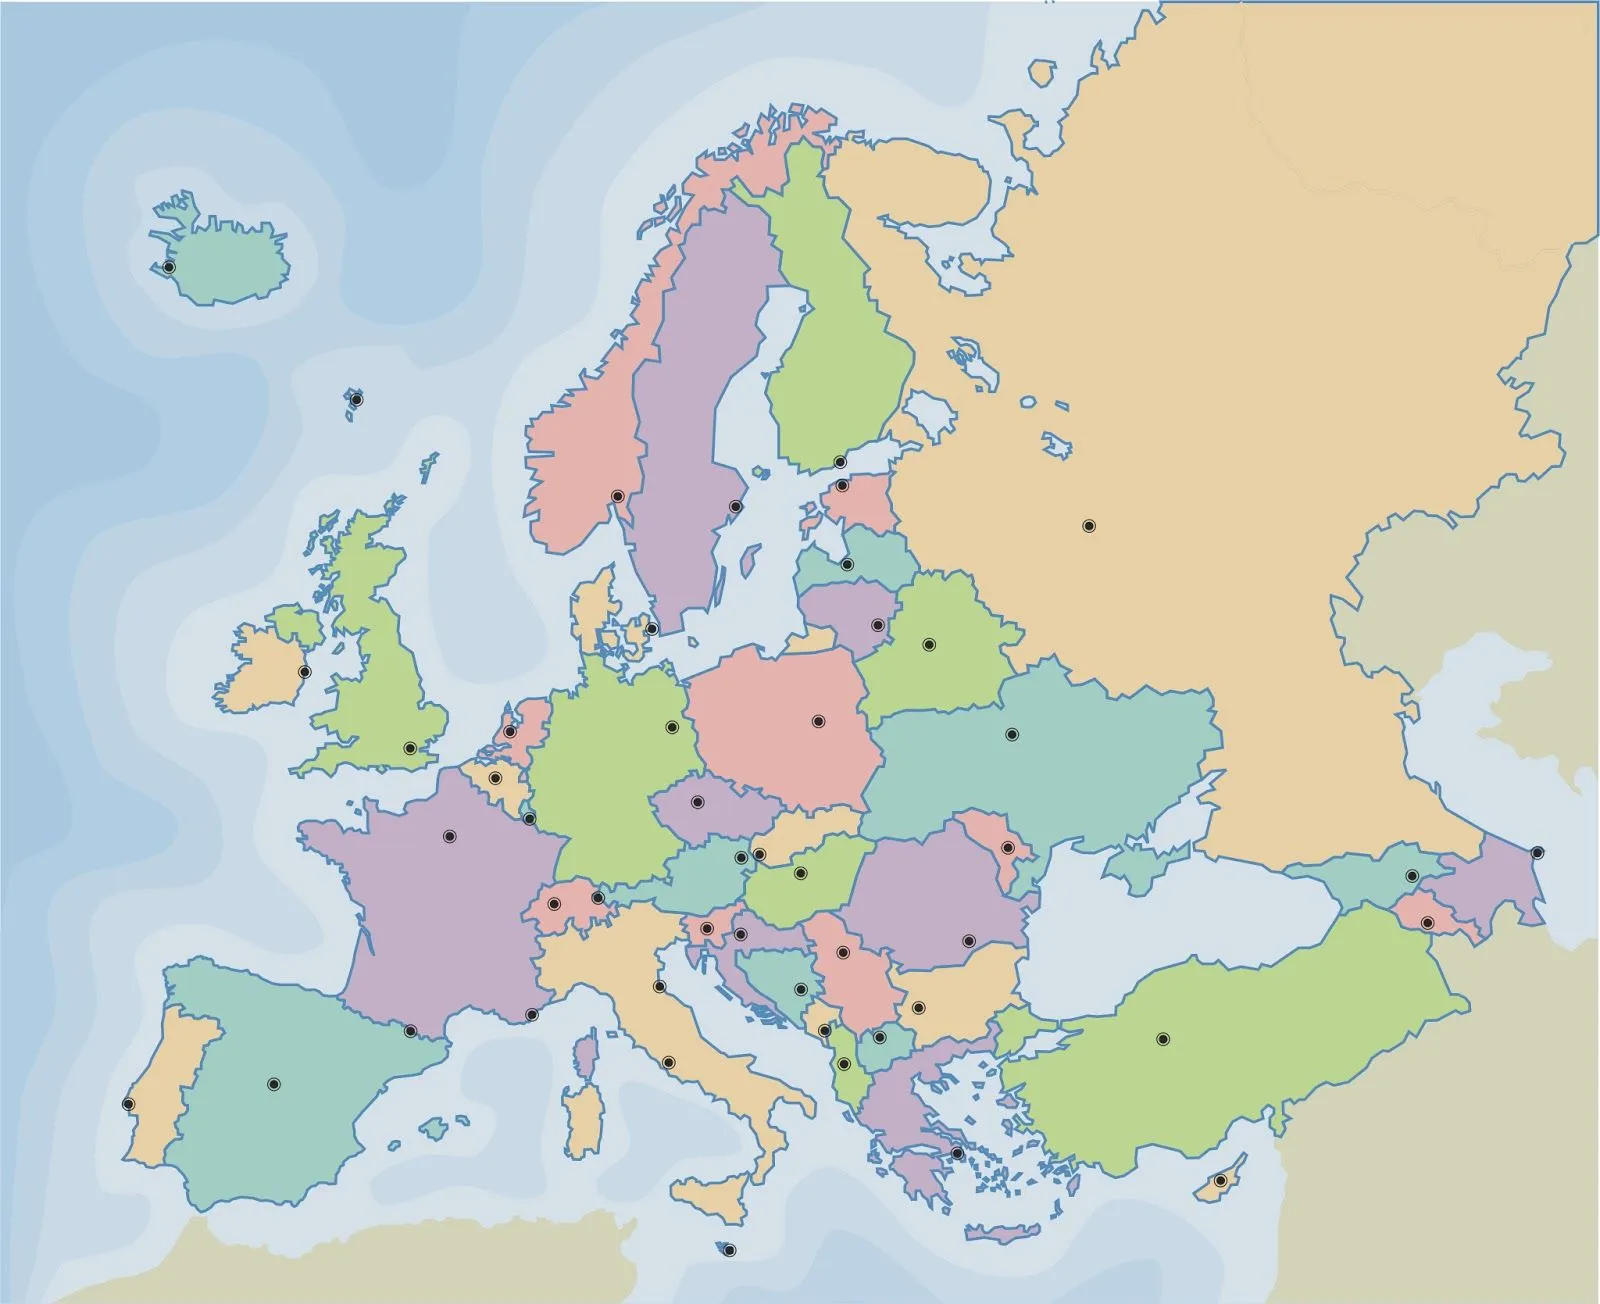 Ciencias Sociales IES Emilio Manzano.: Mapa político de Europa ...